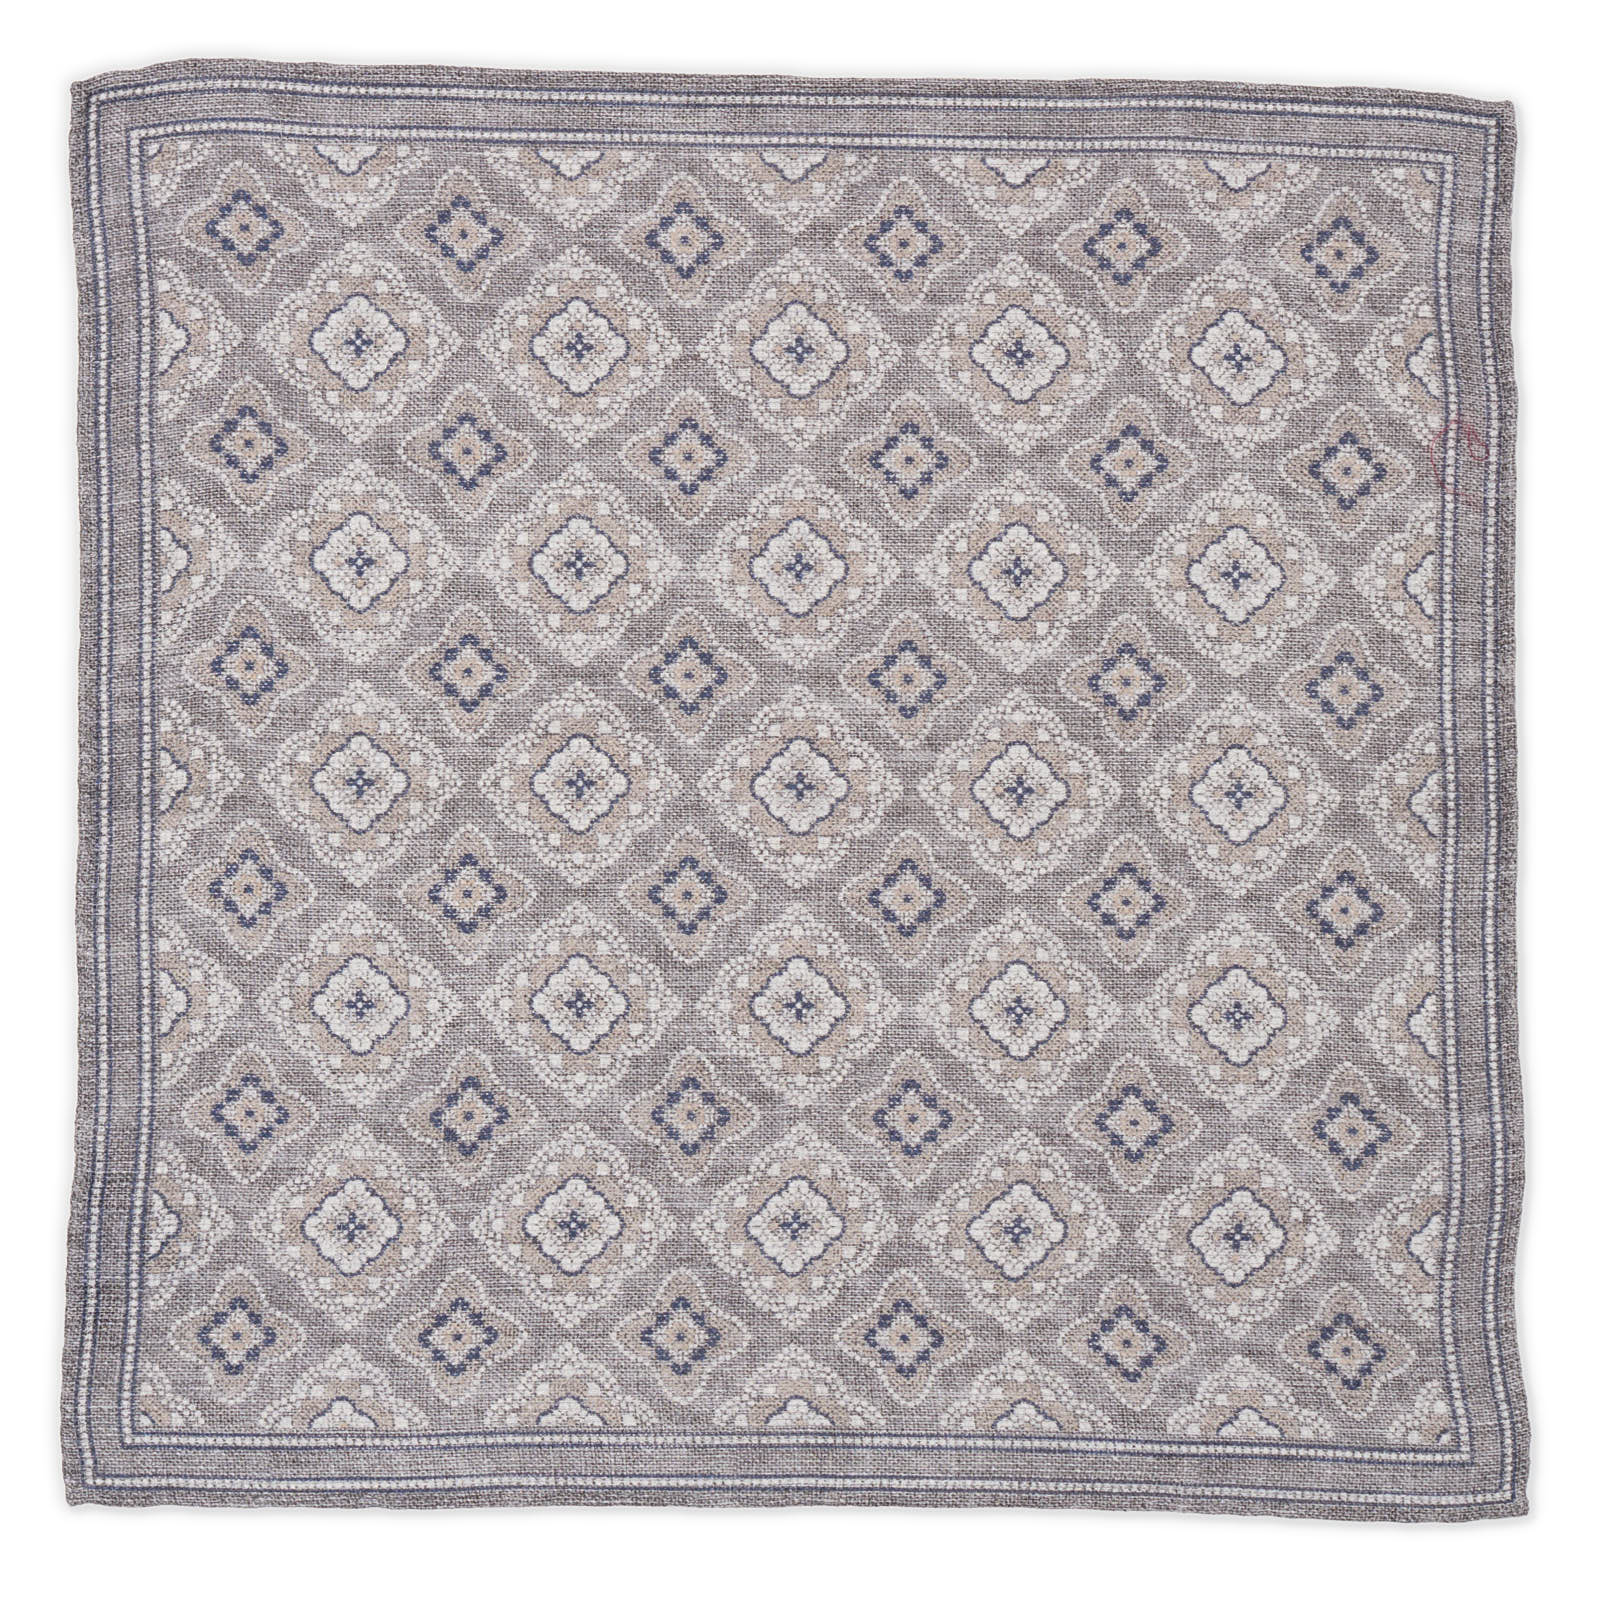 ROSI Handmade Gray Medallion Linen-Cotton Pocket Square NEW 31cm x 31cm